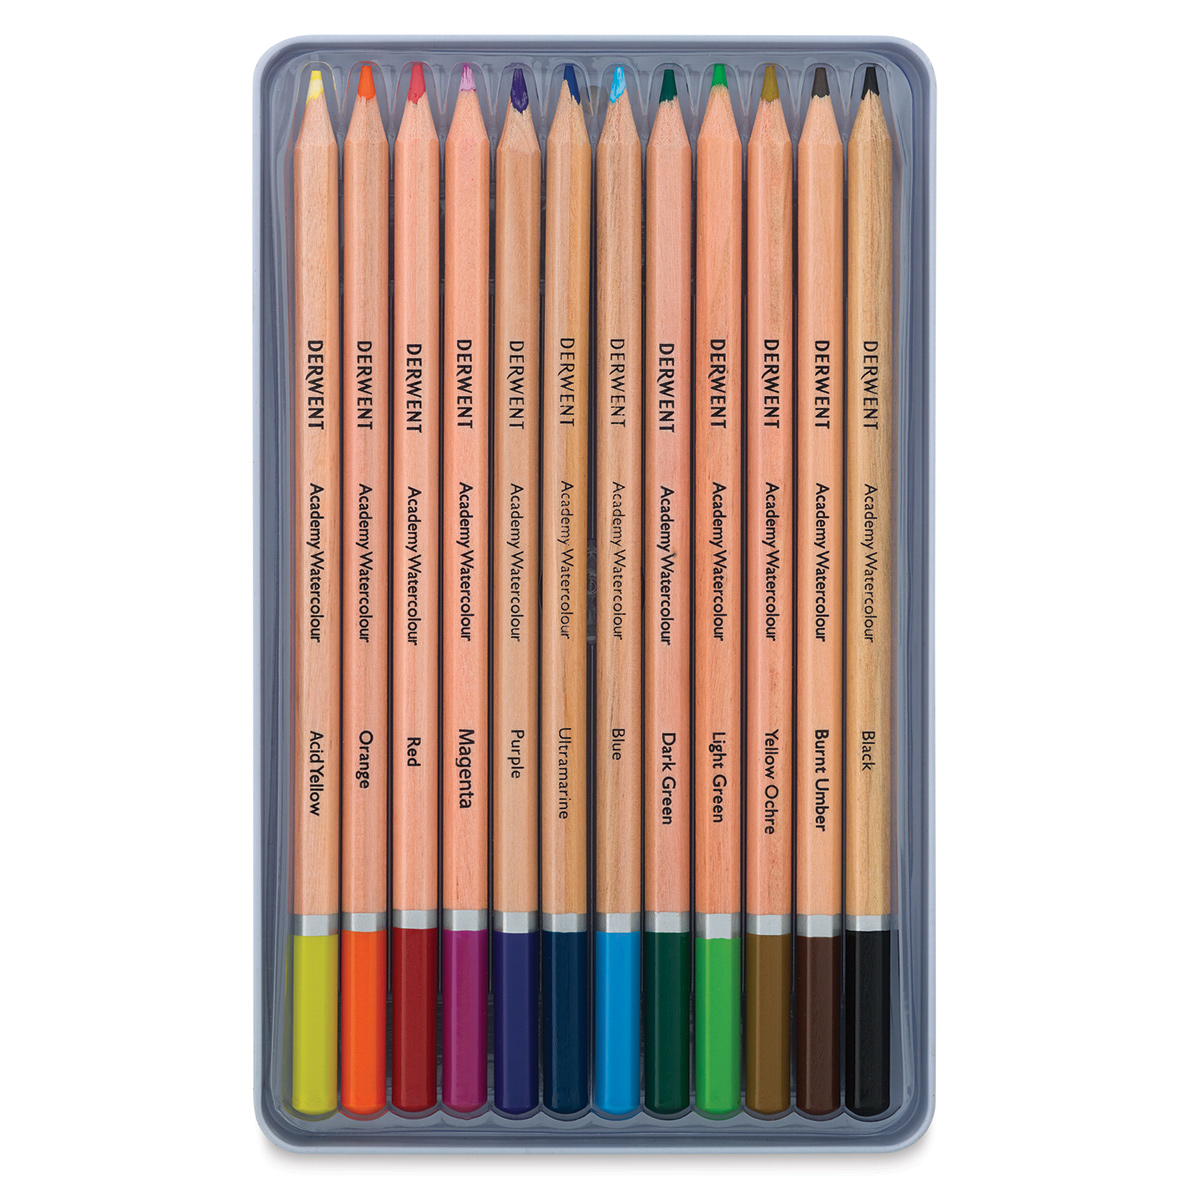 Derwent Watercolor Pencil Set - 12 Pencils